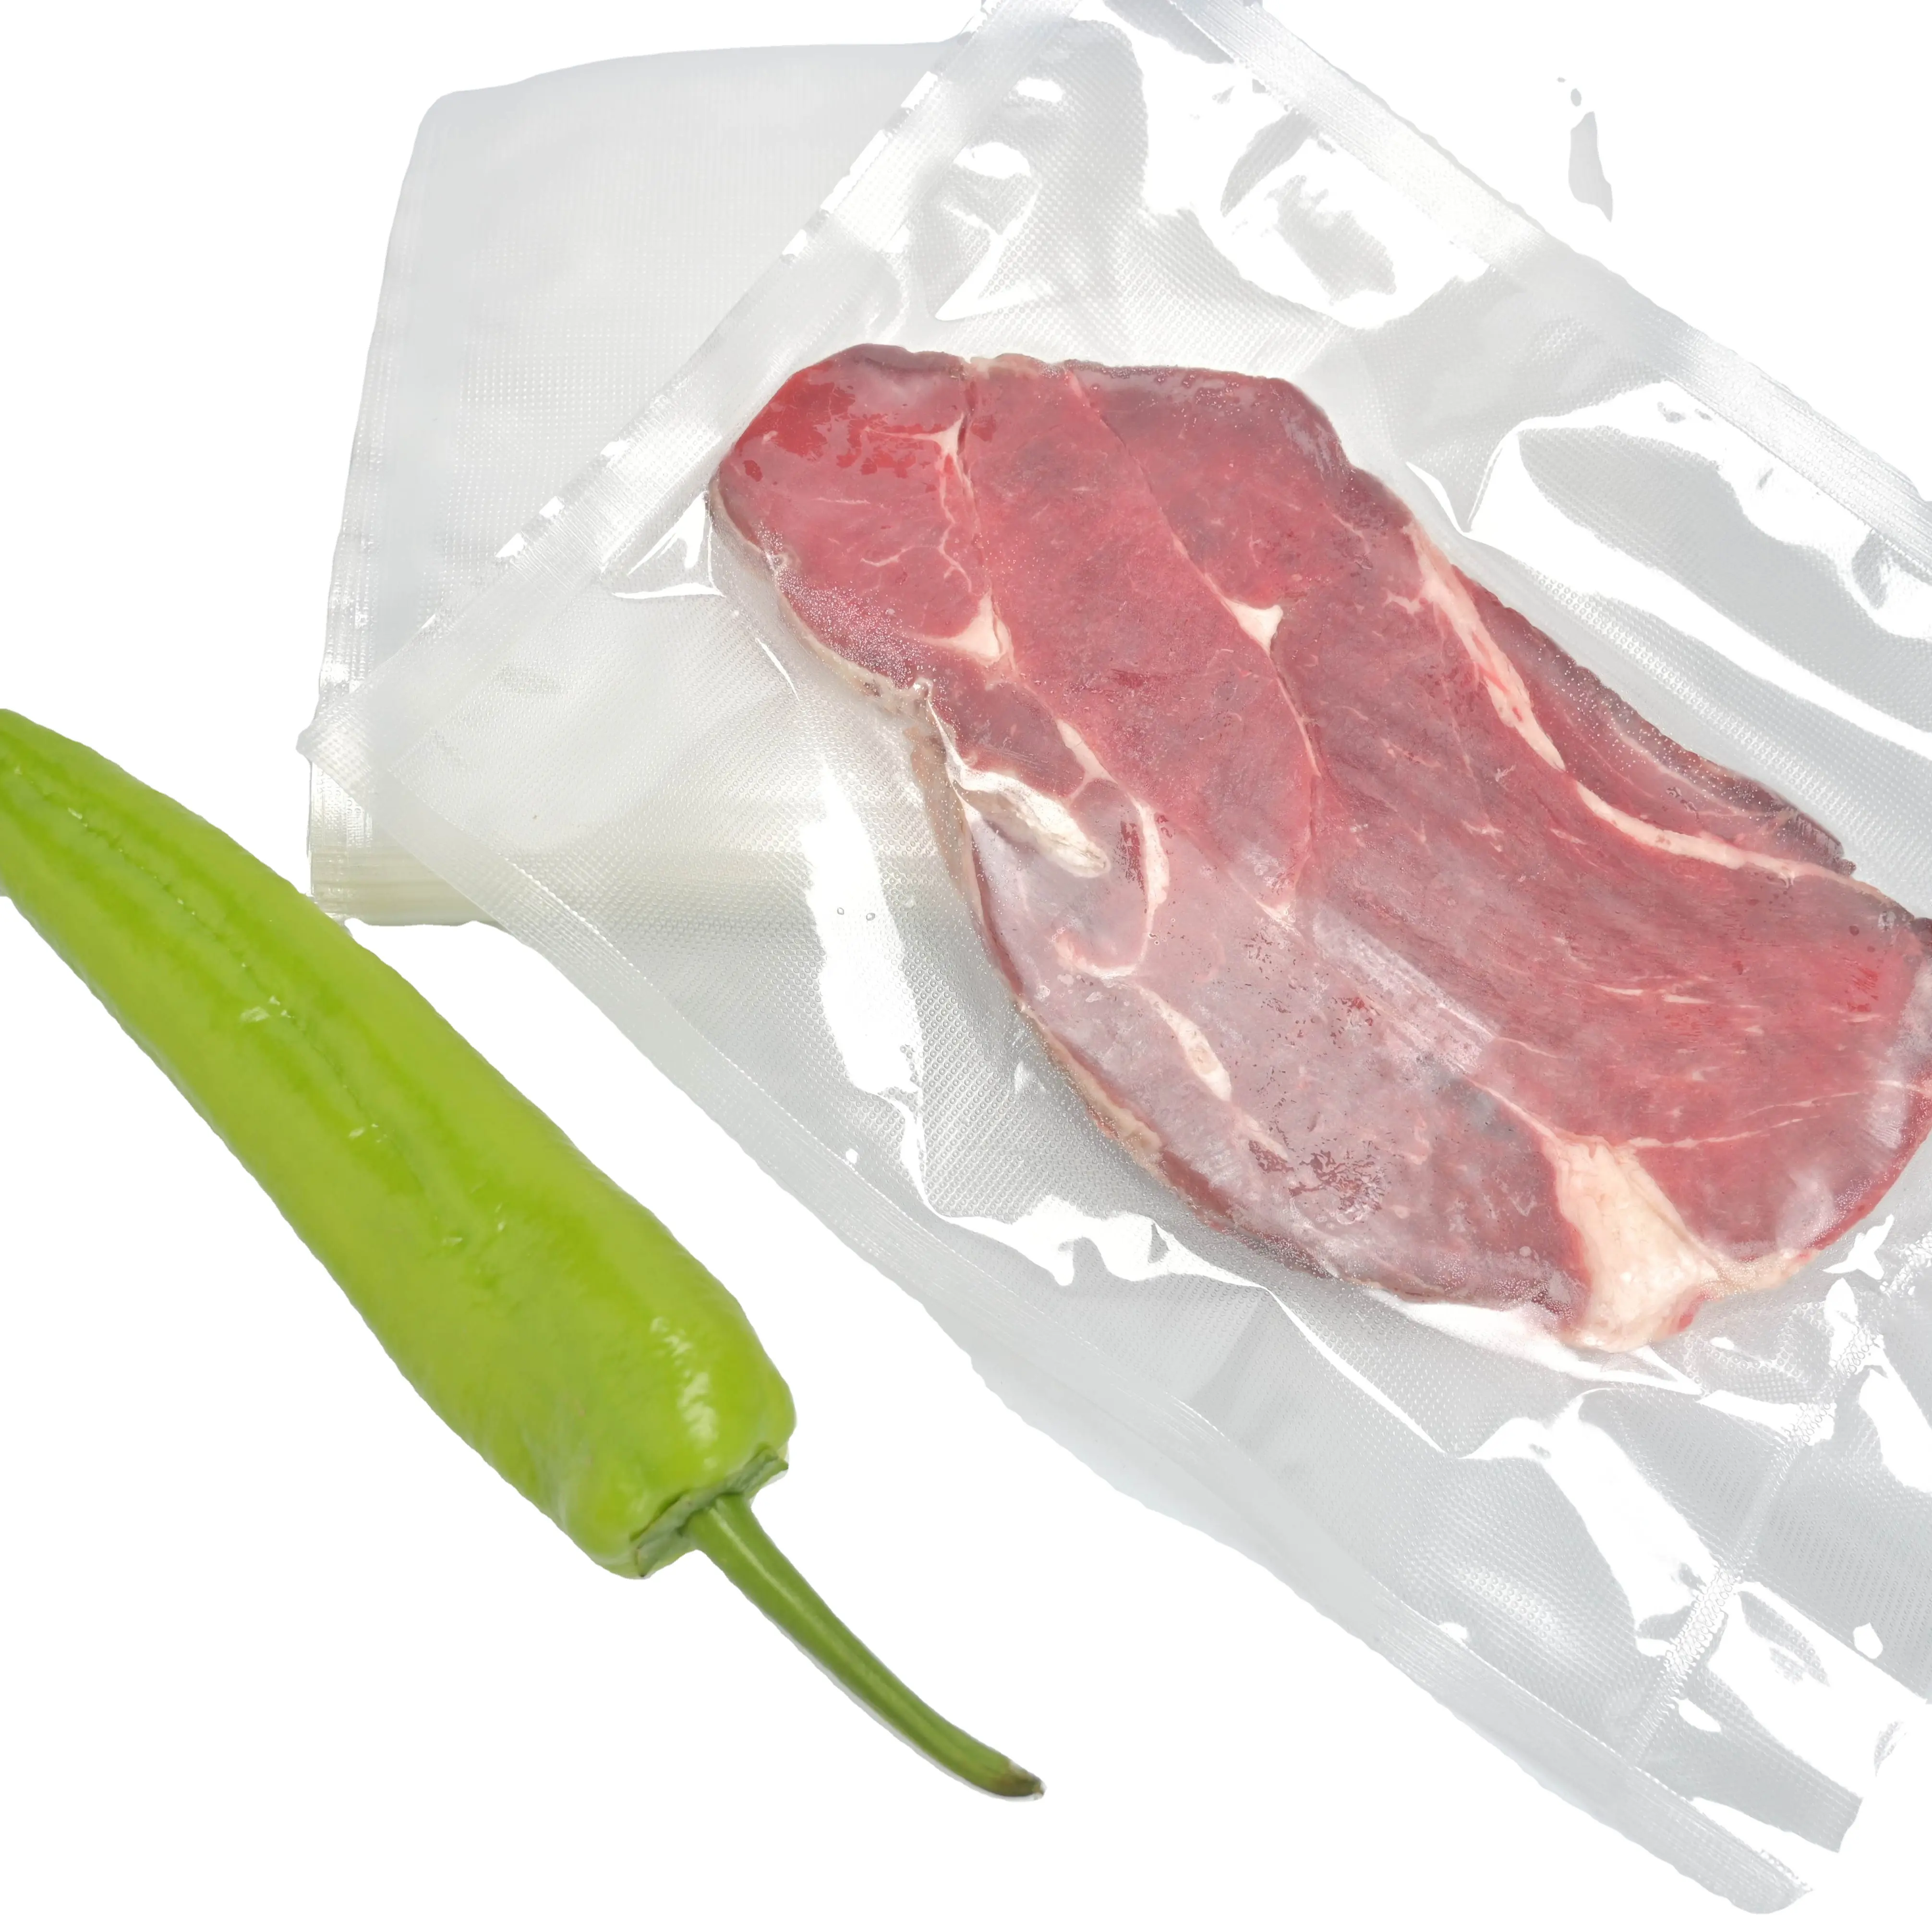 Sacchetto di immagazzinaggio biodegradabile sacchetto sottovuoto per alimenti con sigillo di imballaggio in plastica di buona qualità per uso alimentare